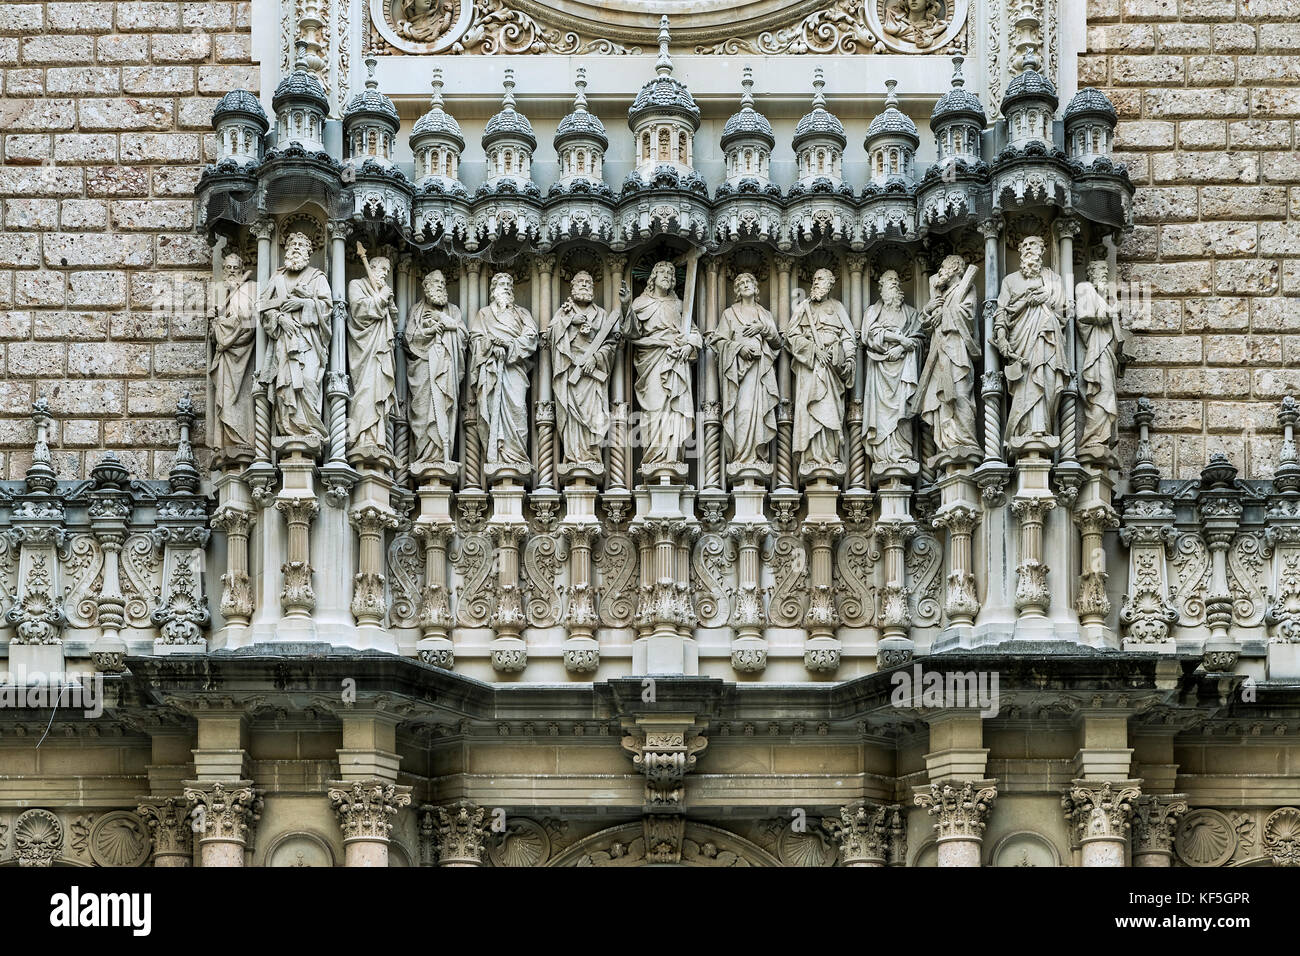 Escultura exterior de Jesús y los doce apóstoles, Santa María de Montserrat, Monistrol de Montserrat, Cataluña, España. Foto de stock